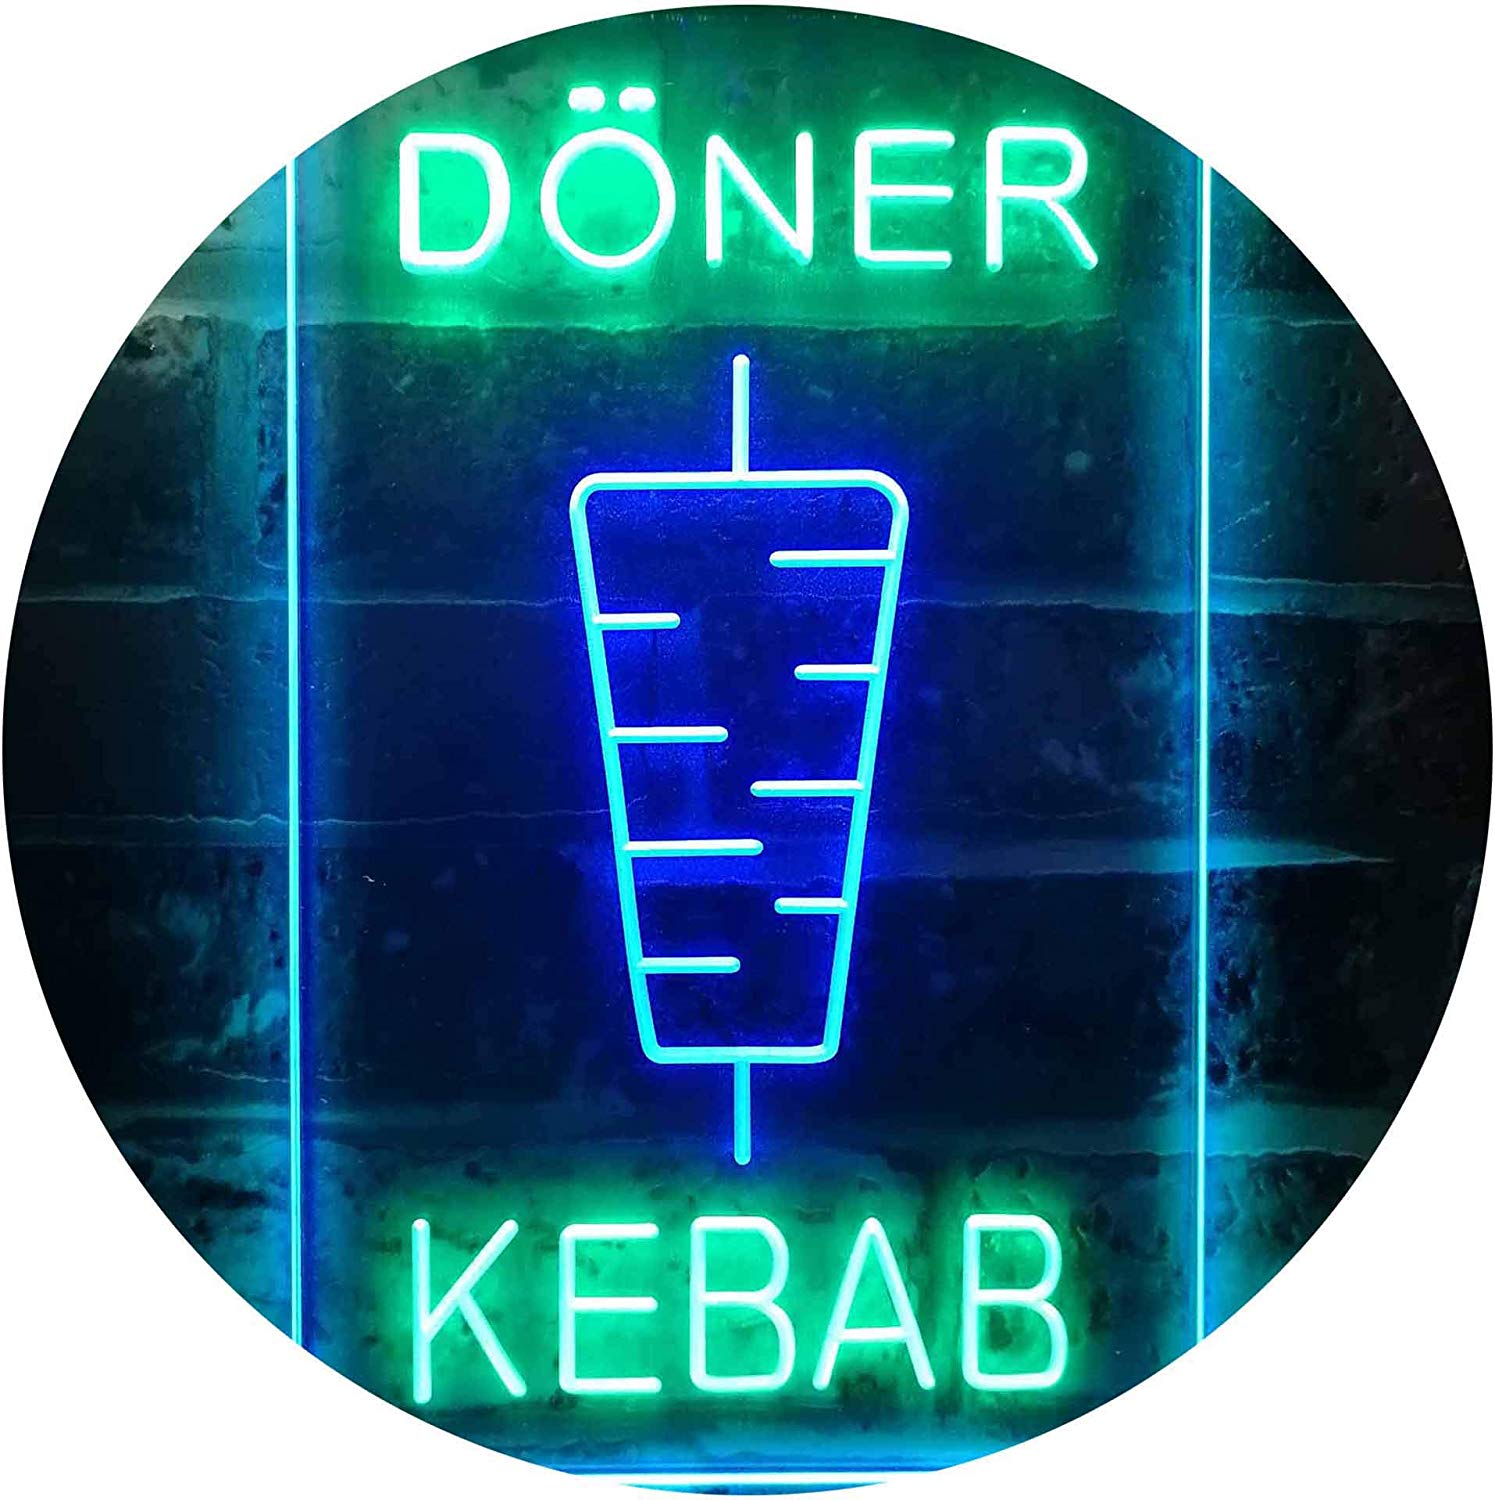 Doner Kebab LED Neon Light Sign - Way Up Gifts